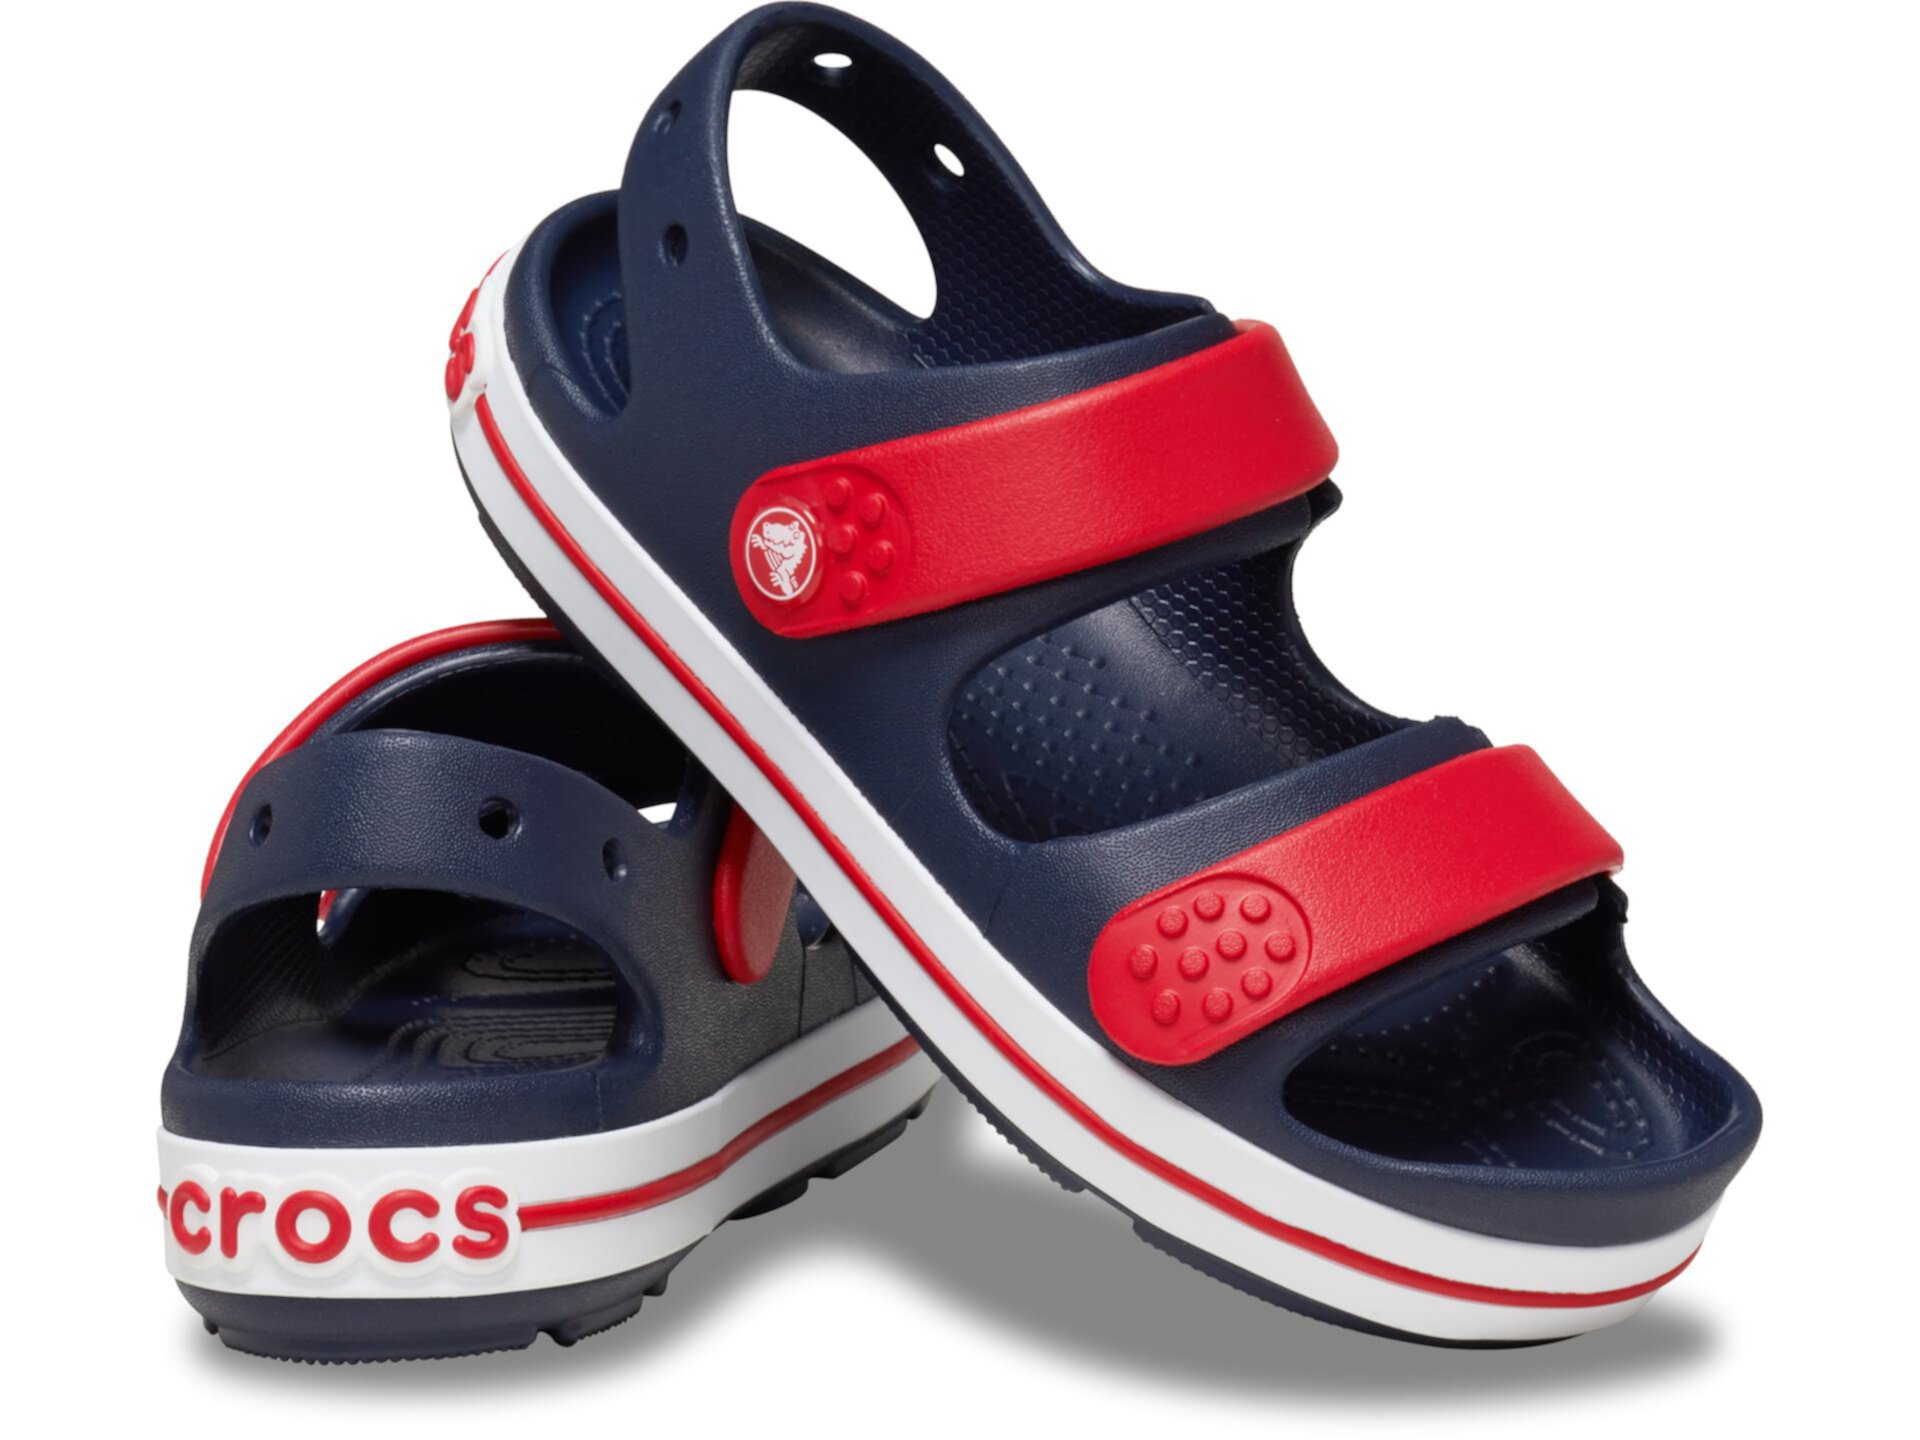 Сандалии Crocband Cruiser (для малышей) Crocs